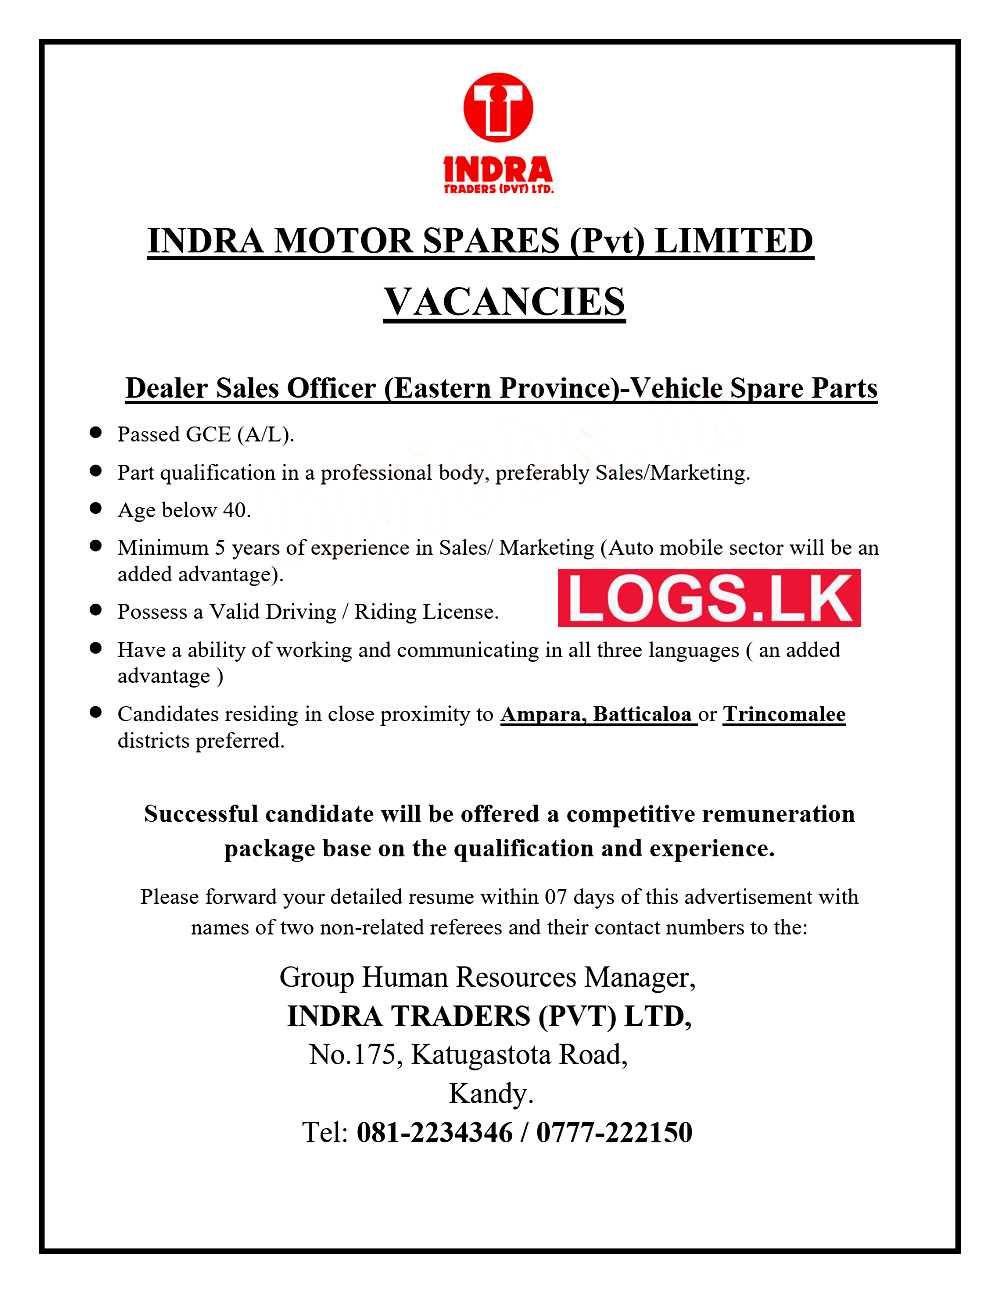 Dealer Sales Officer Job Vacancy at Indra Motor Spares (Pvt) Ltd Job Vacancies